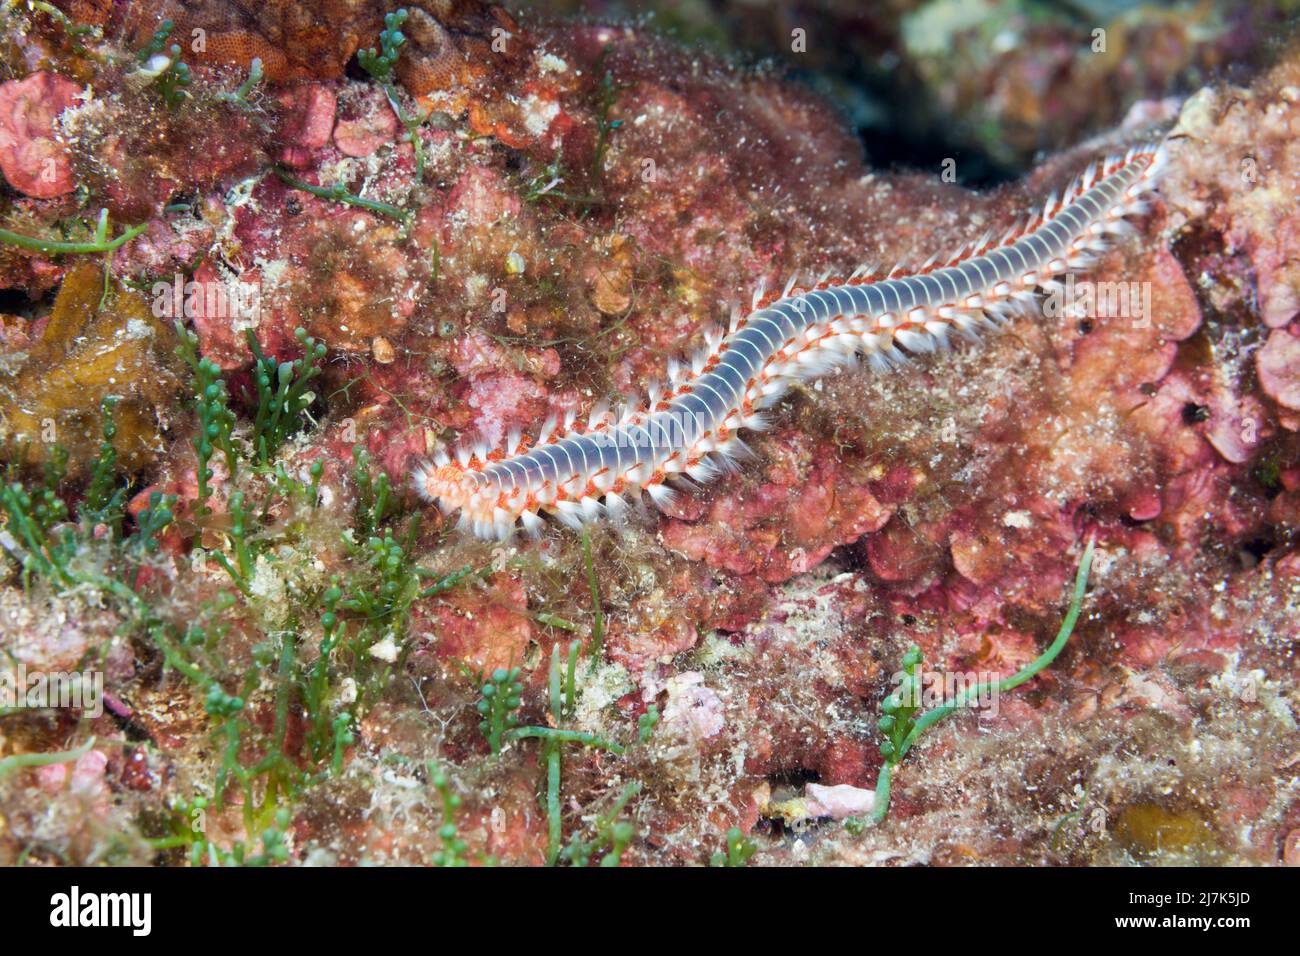 Fireworm, Hermodice carunculata, Vis Island, Mar Mediterráneo, Croacia Foto de stock